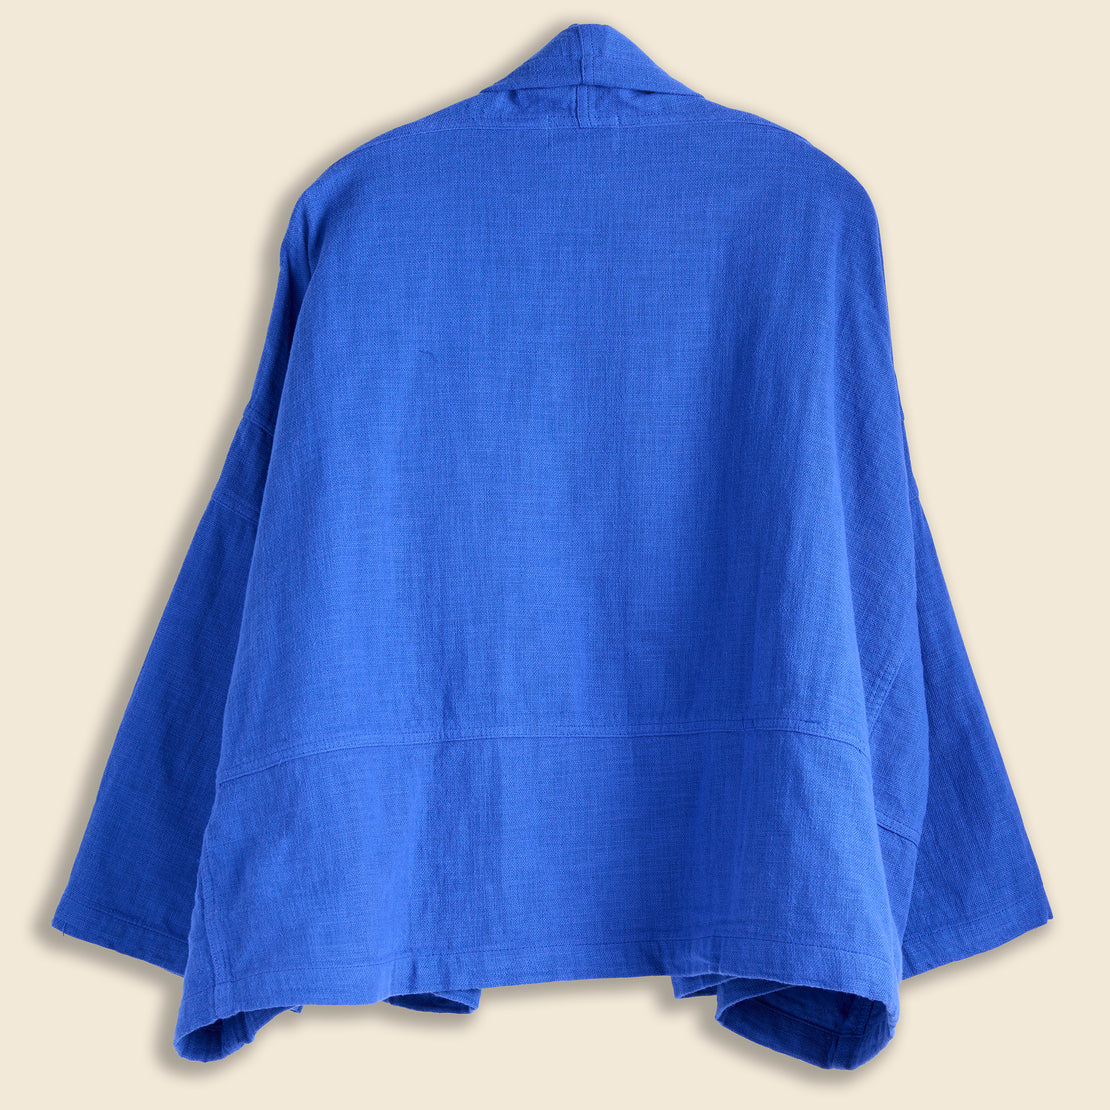 Kimono Jacket - Majorelle - Atelier Delphine - STAG Provisions - W - Tops - Kimono